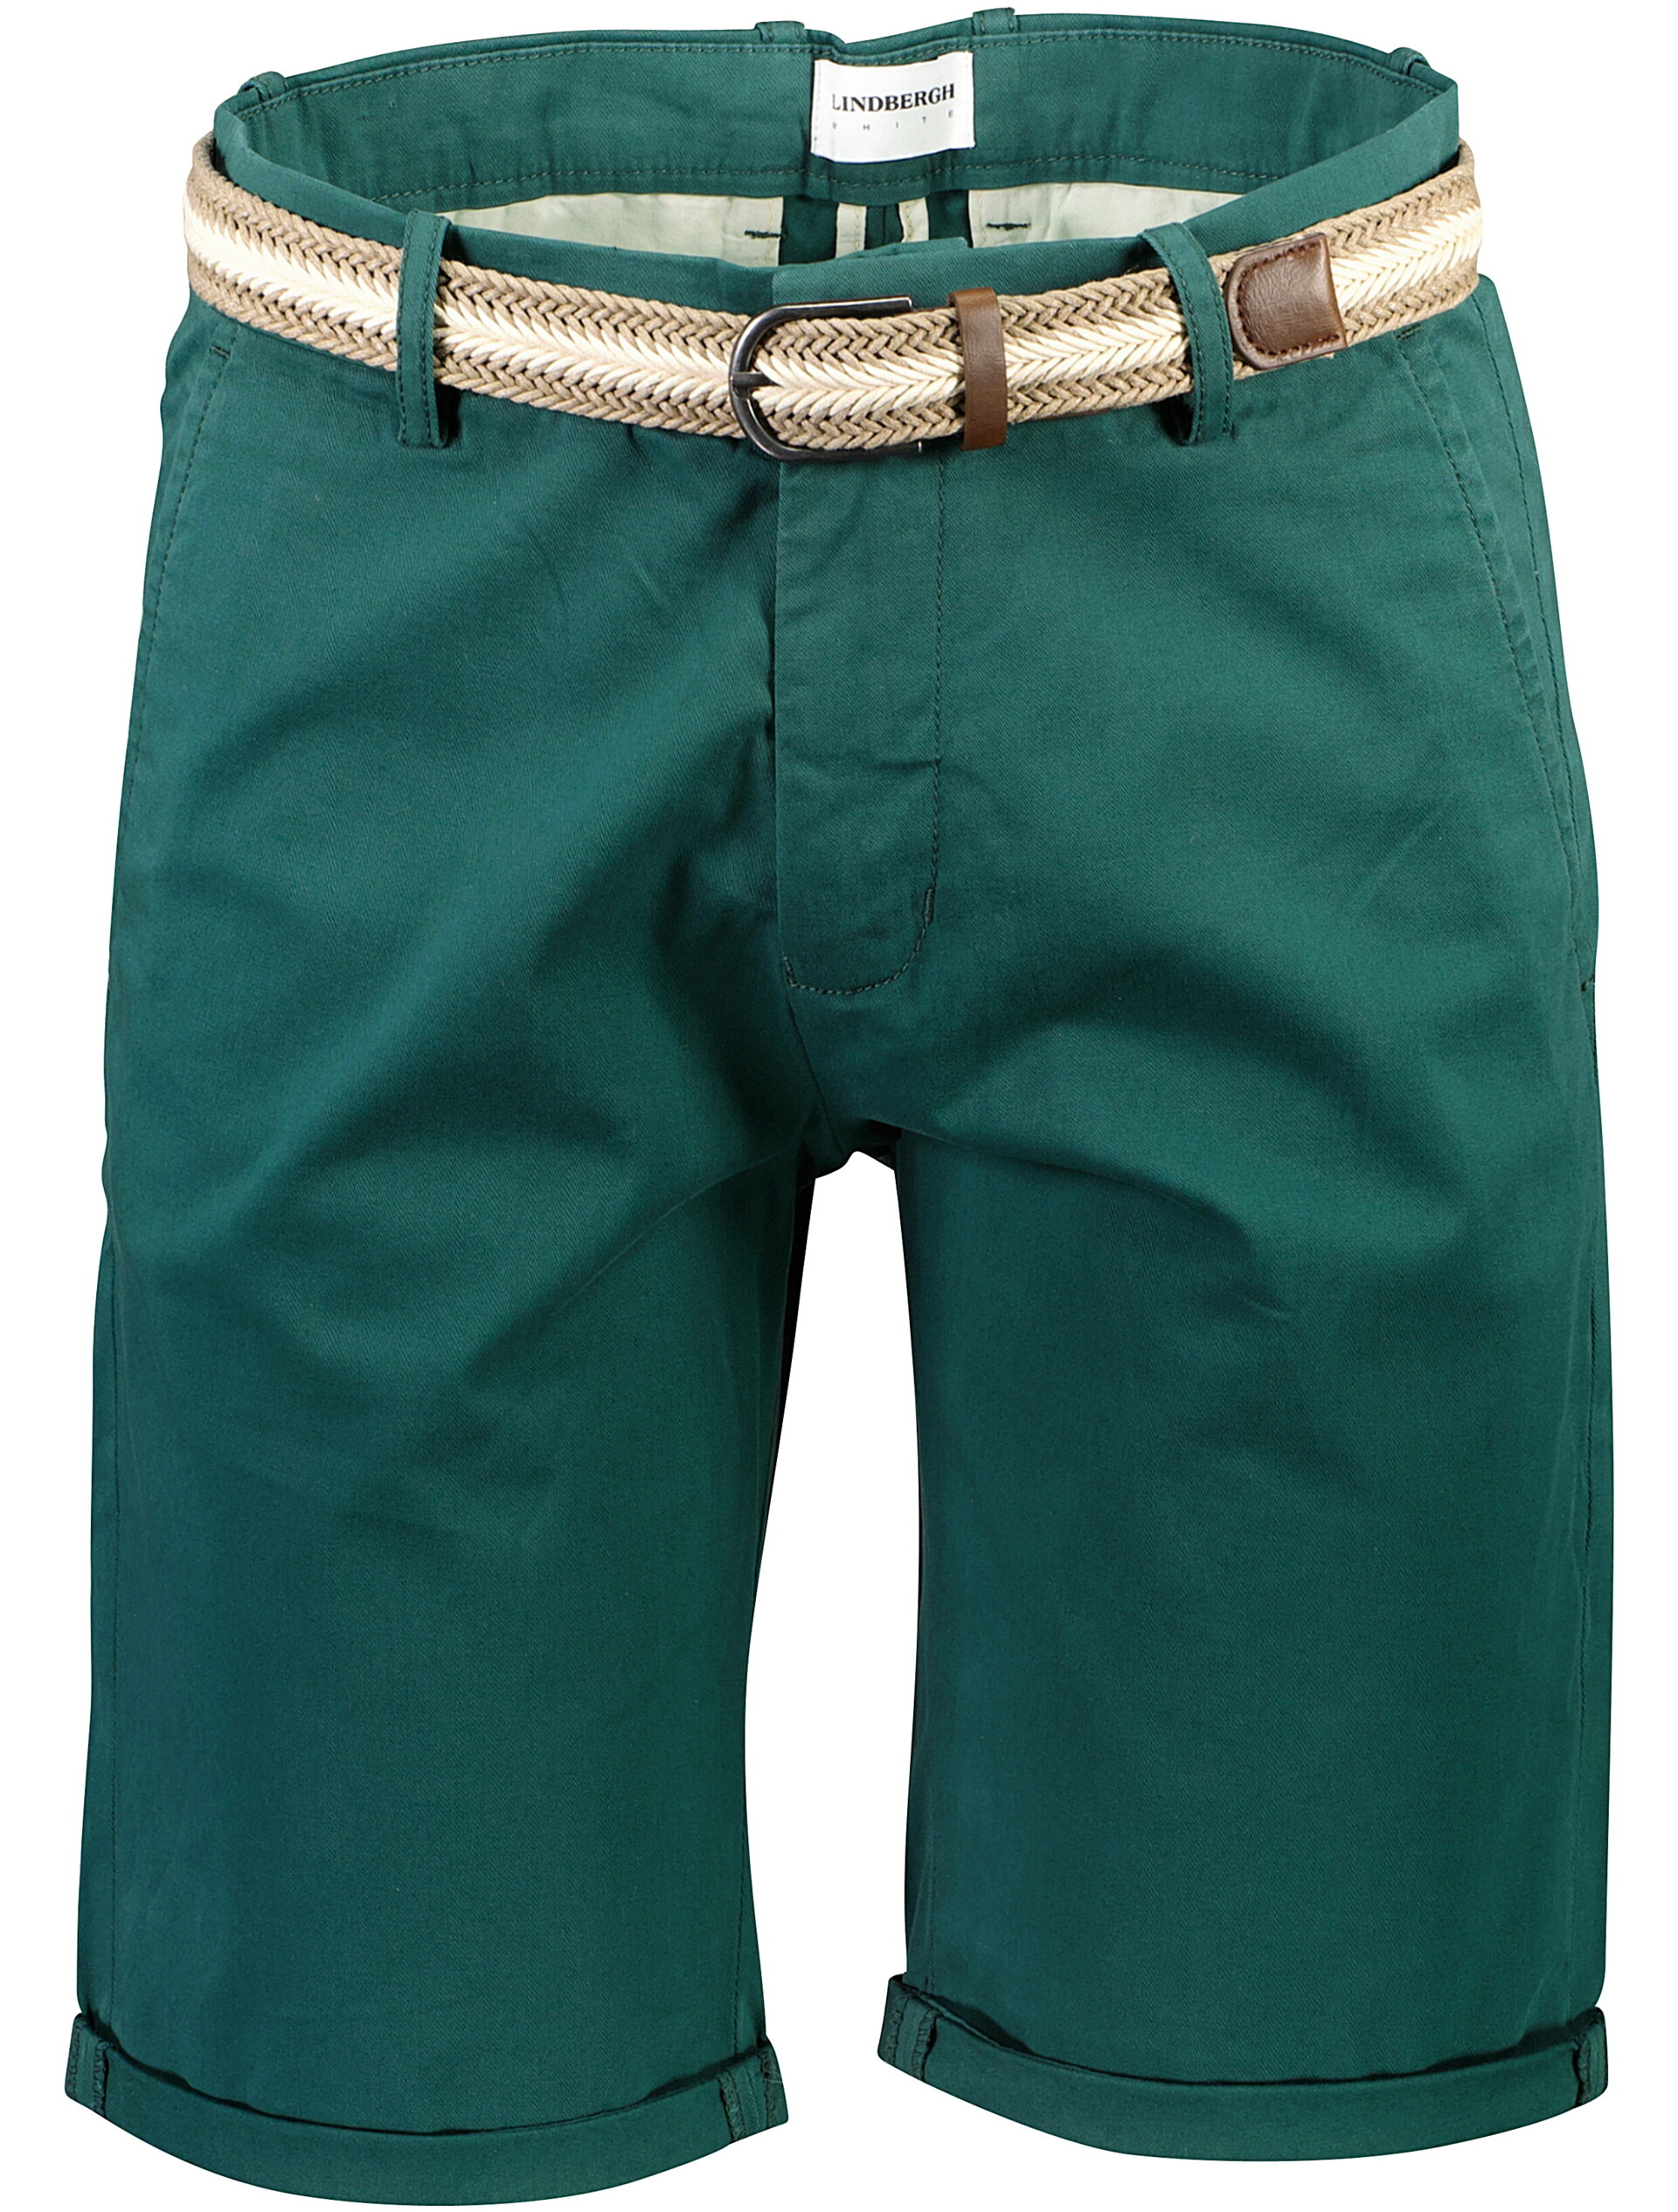 Lindbergh Chino shorts green / deep green